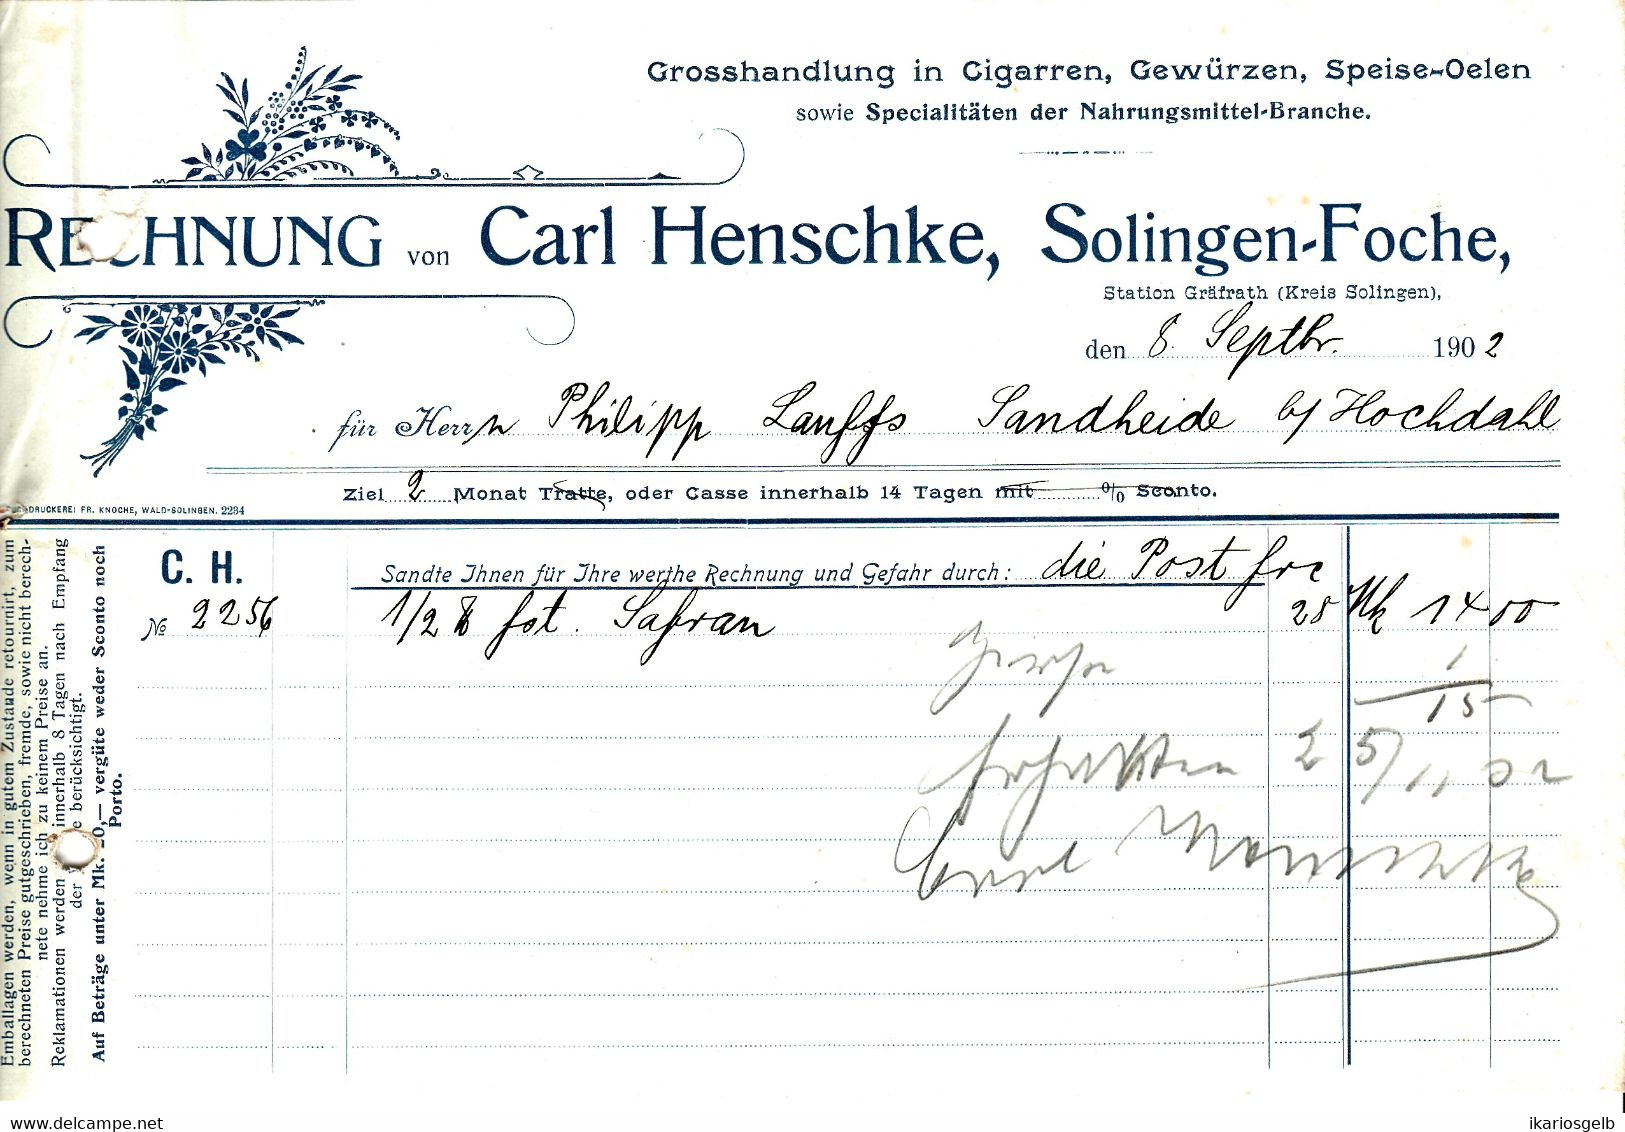 Solingen Foche 1902 Deko Rechnung " Carl Henschke Cigarren Gewürze Speiseöle Großhandlung " - Food